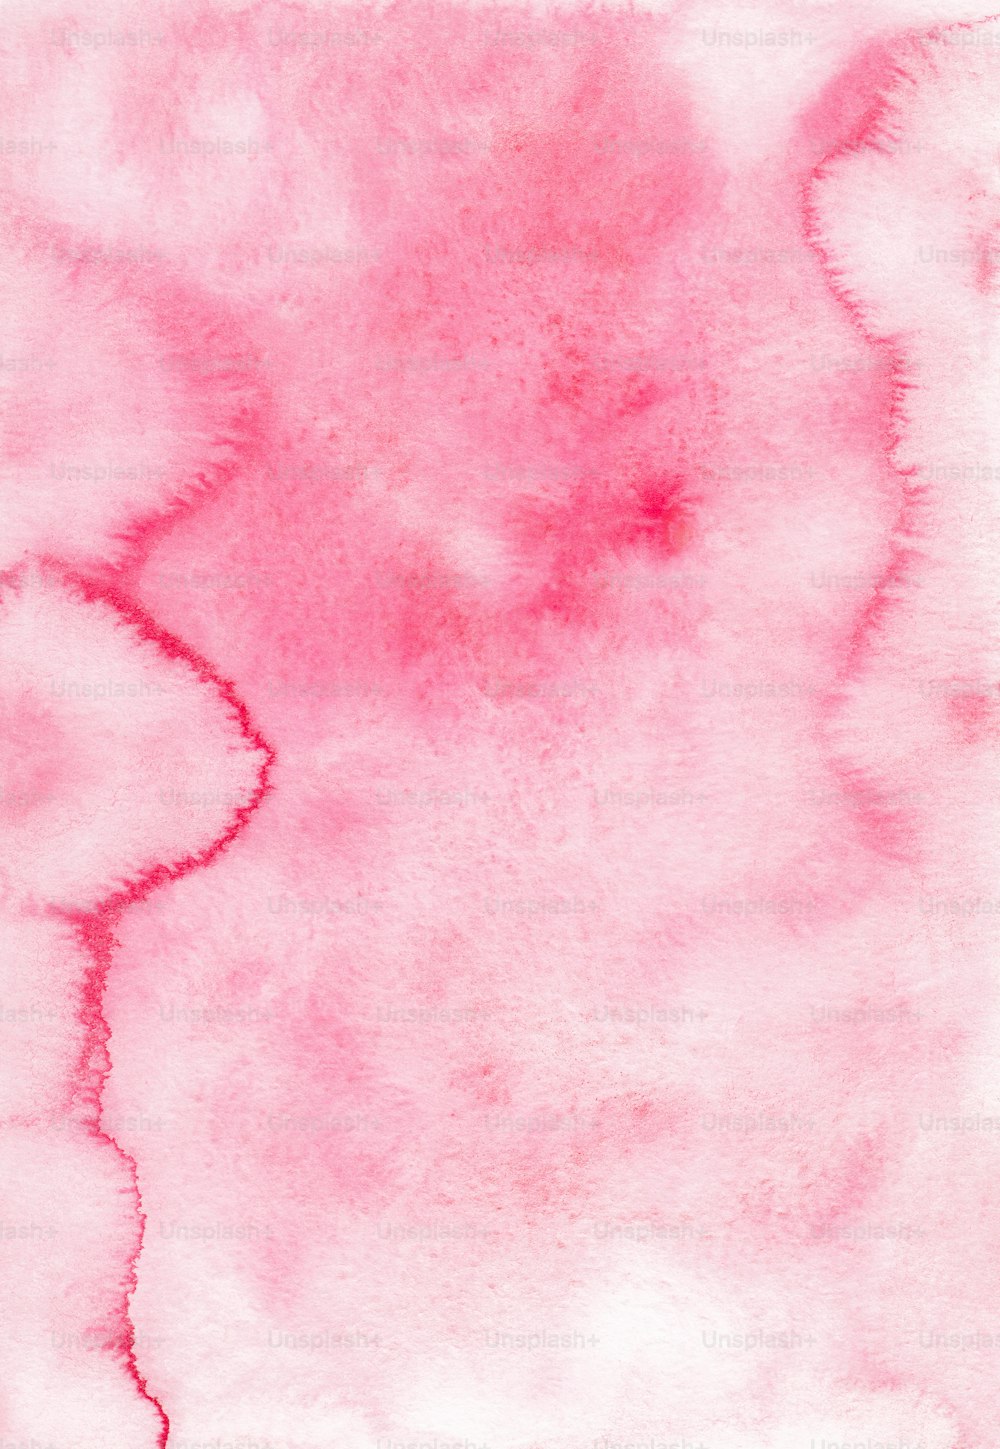 Una acuarela de fondo rosa y blanco